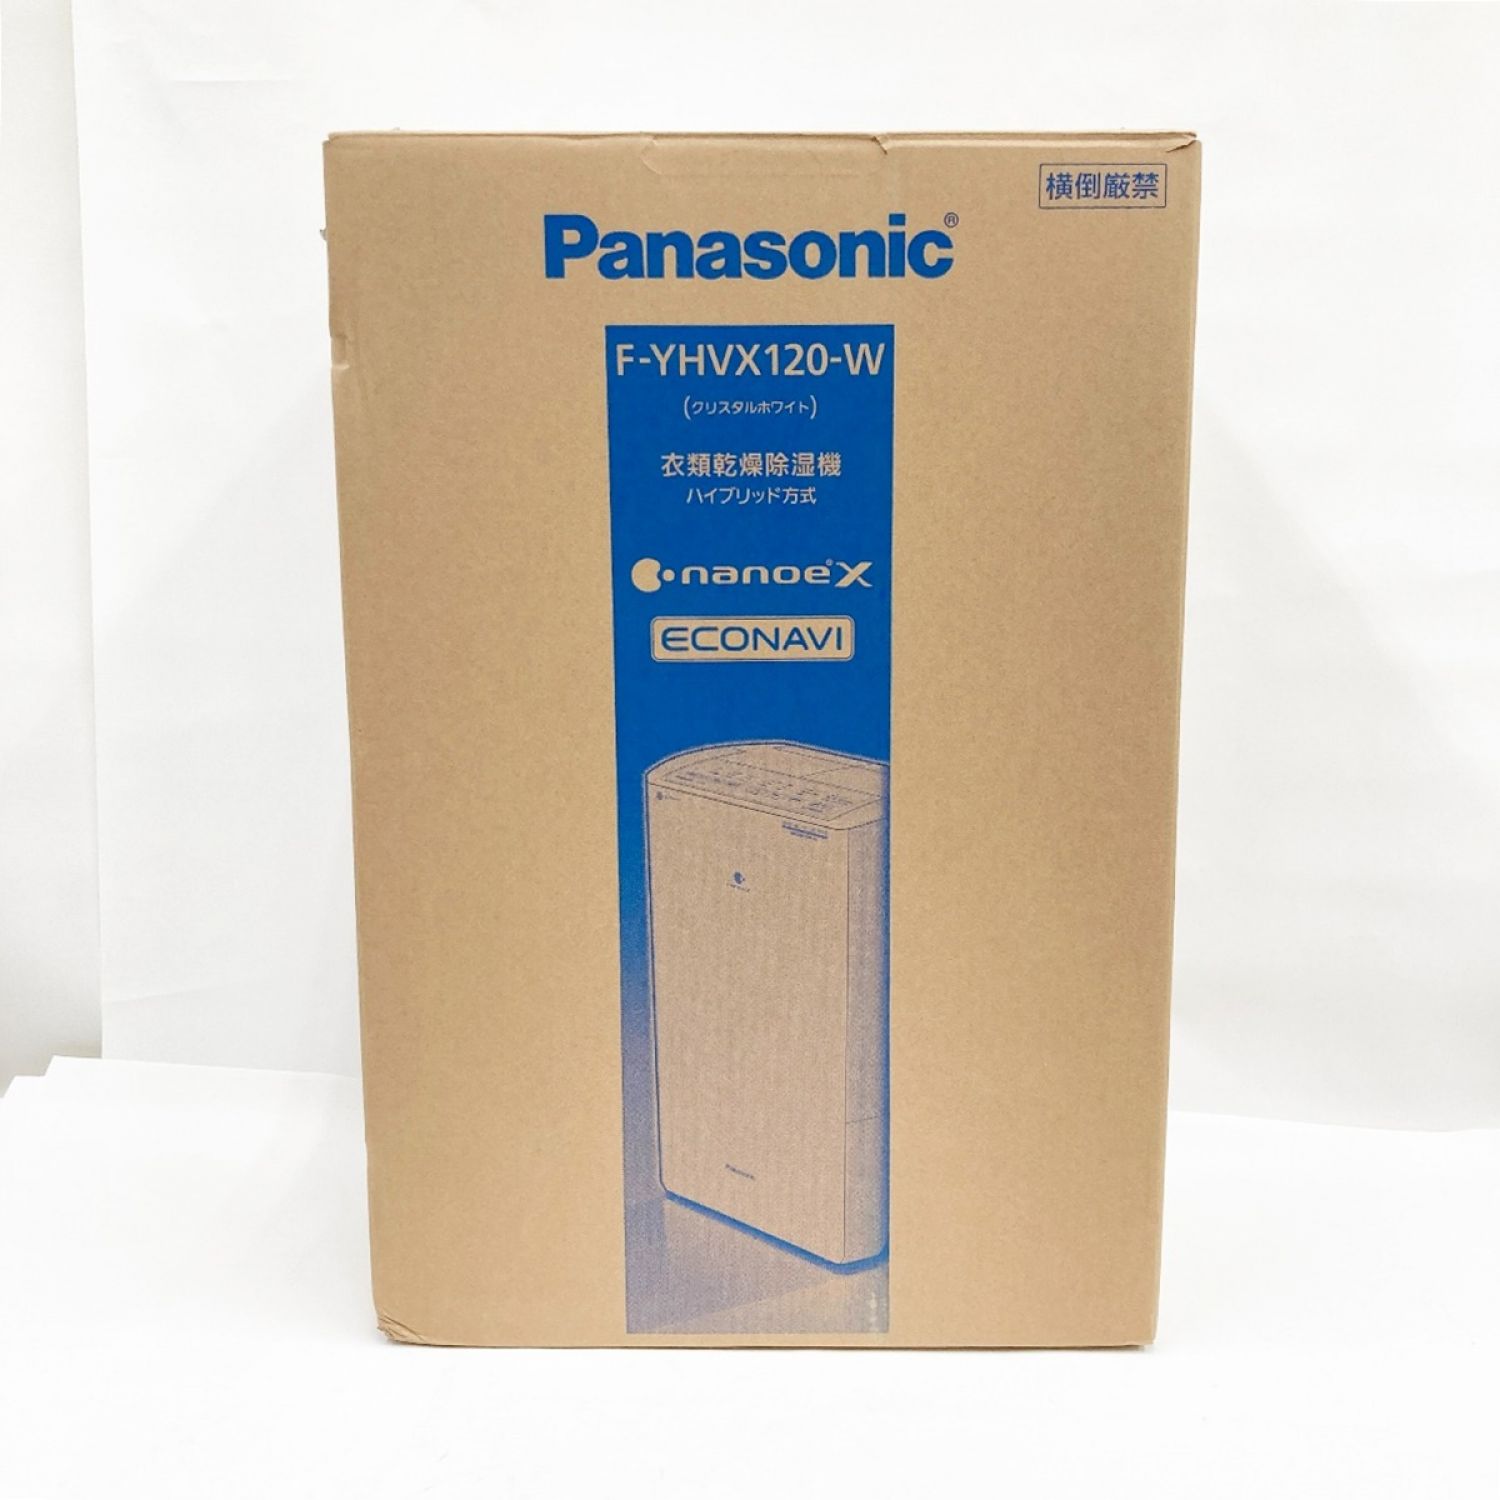 新品・未開封Panasonic 衣類乾燥除湿機F-YHVX120-W WHITE - 除湿機・乾燥機